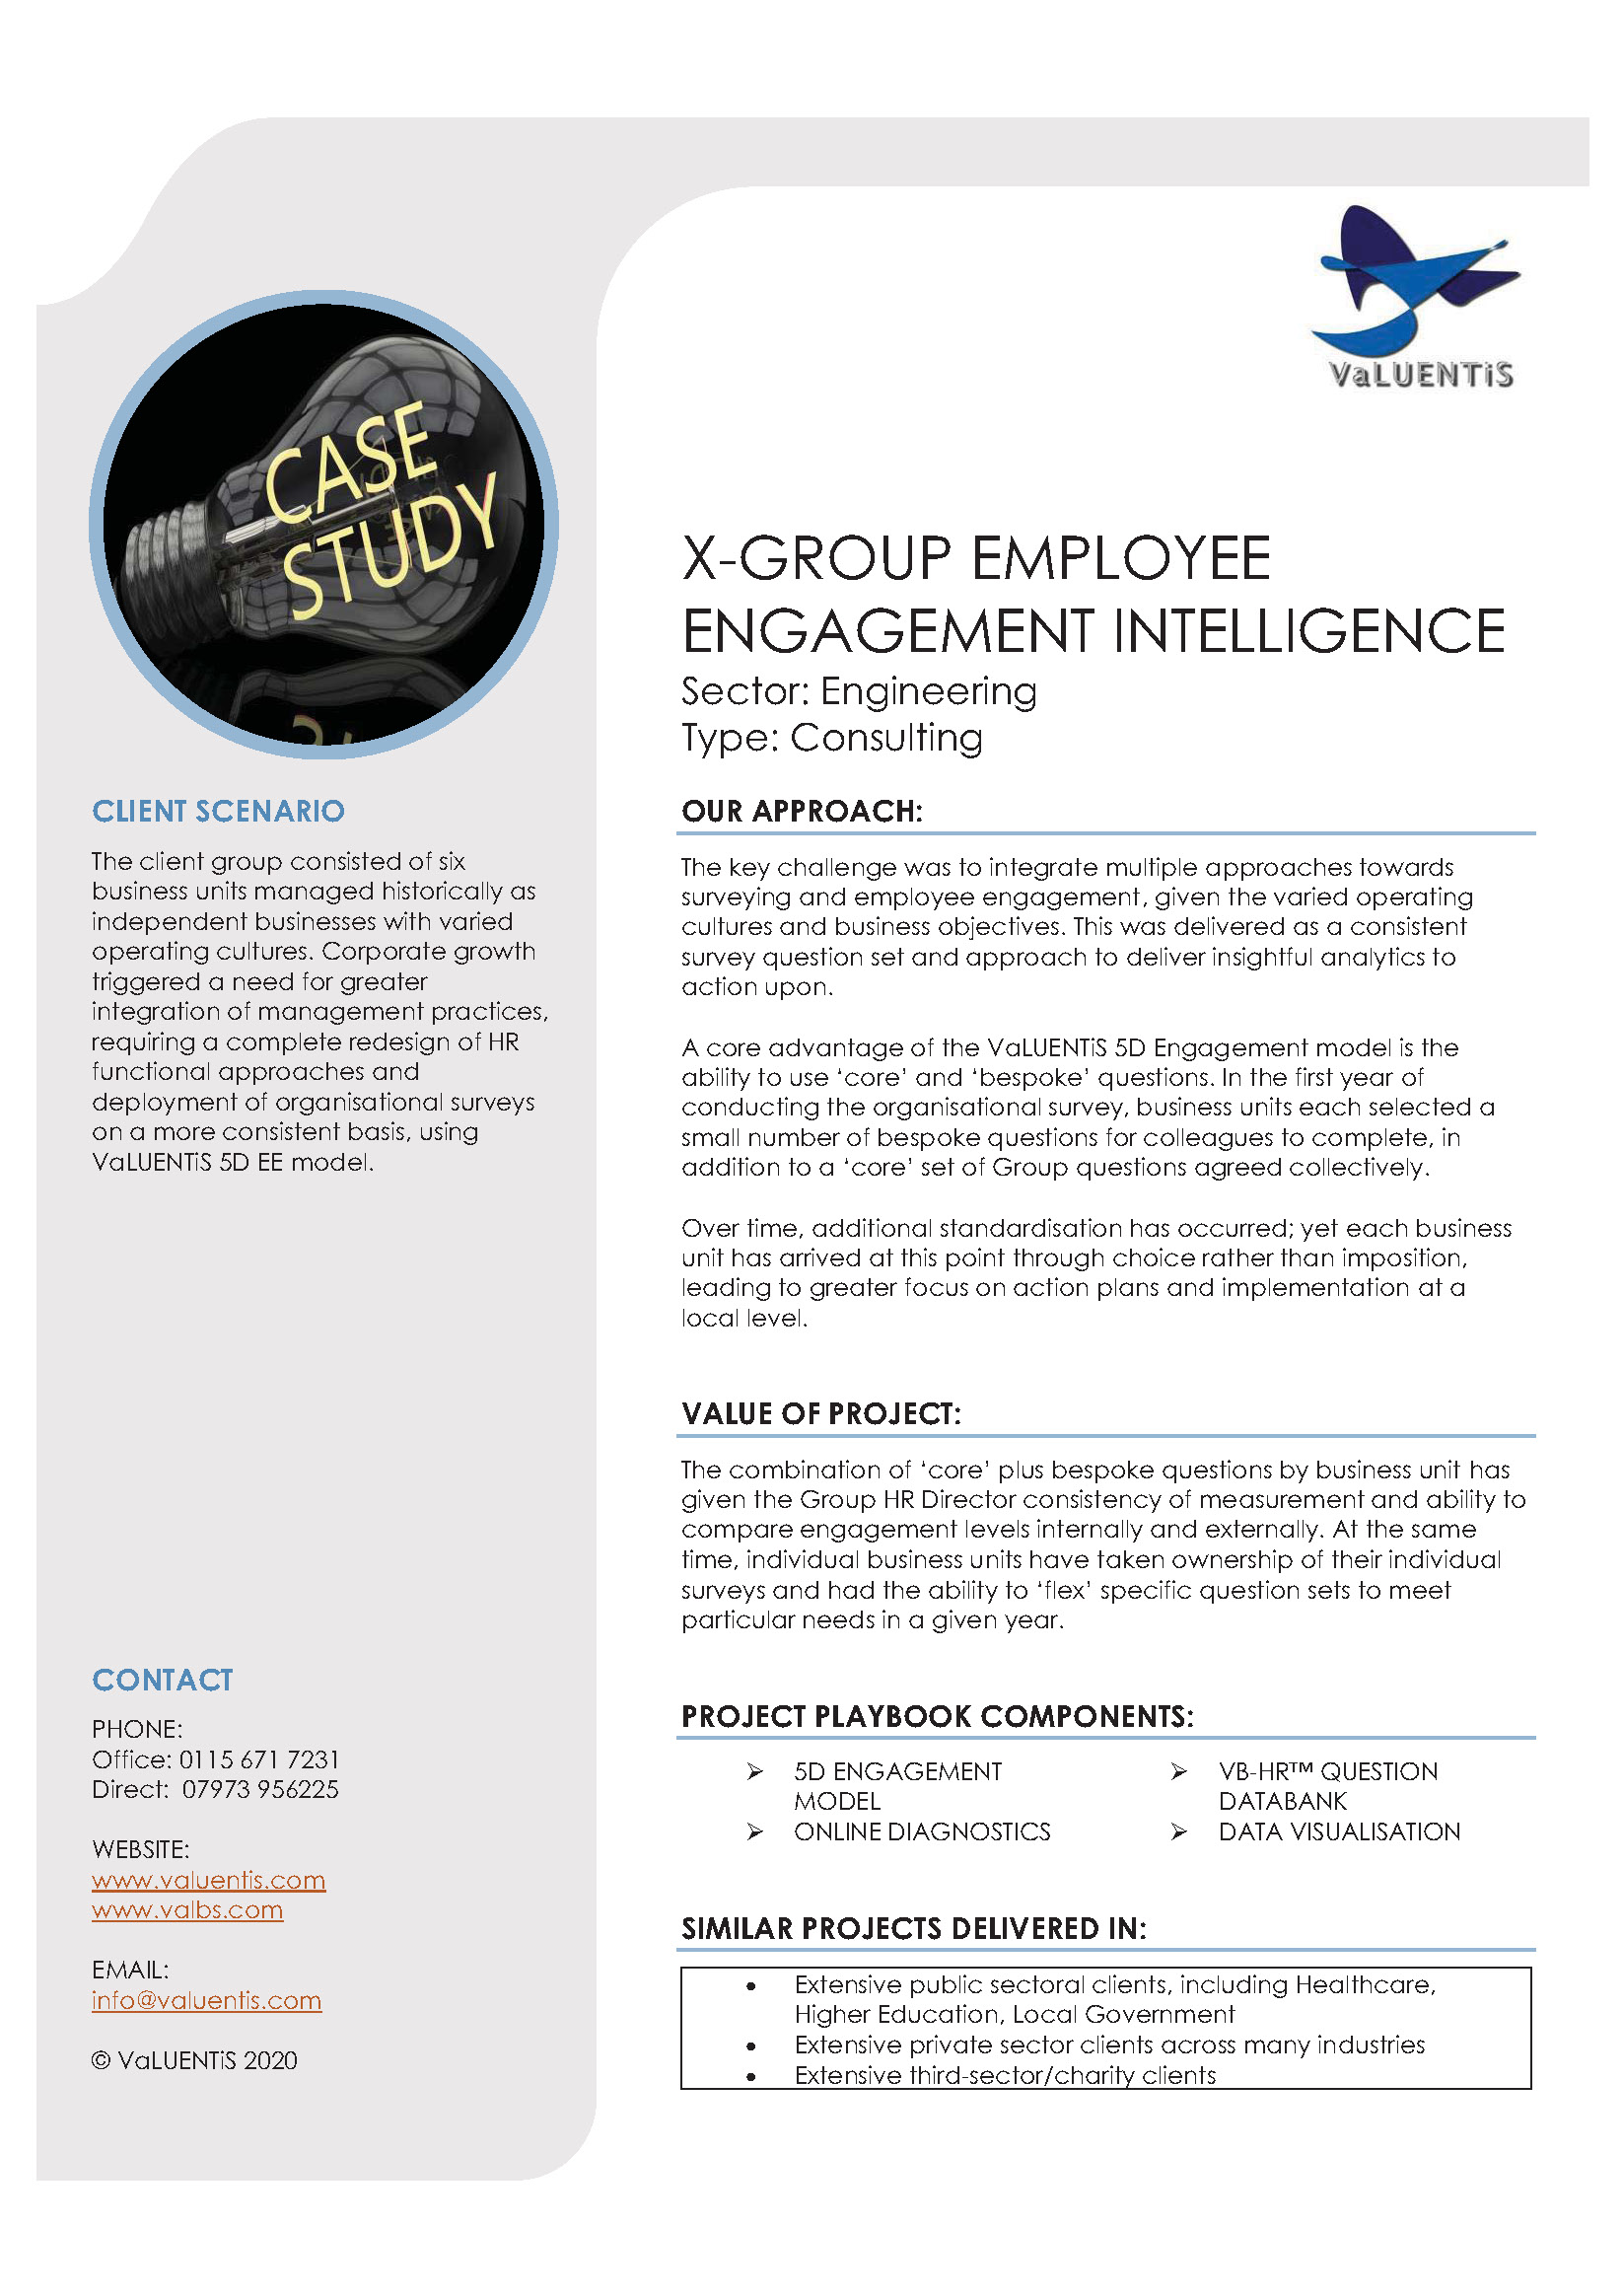 Group Employee Engagement Intelligence